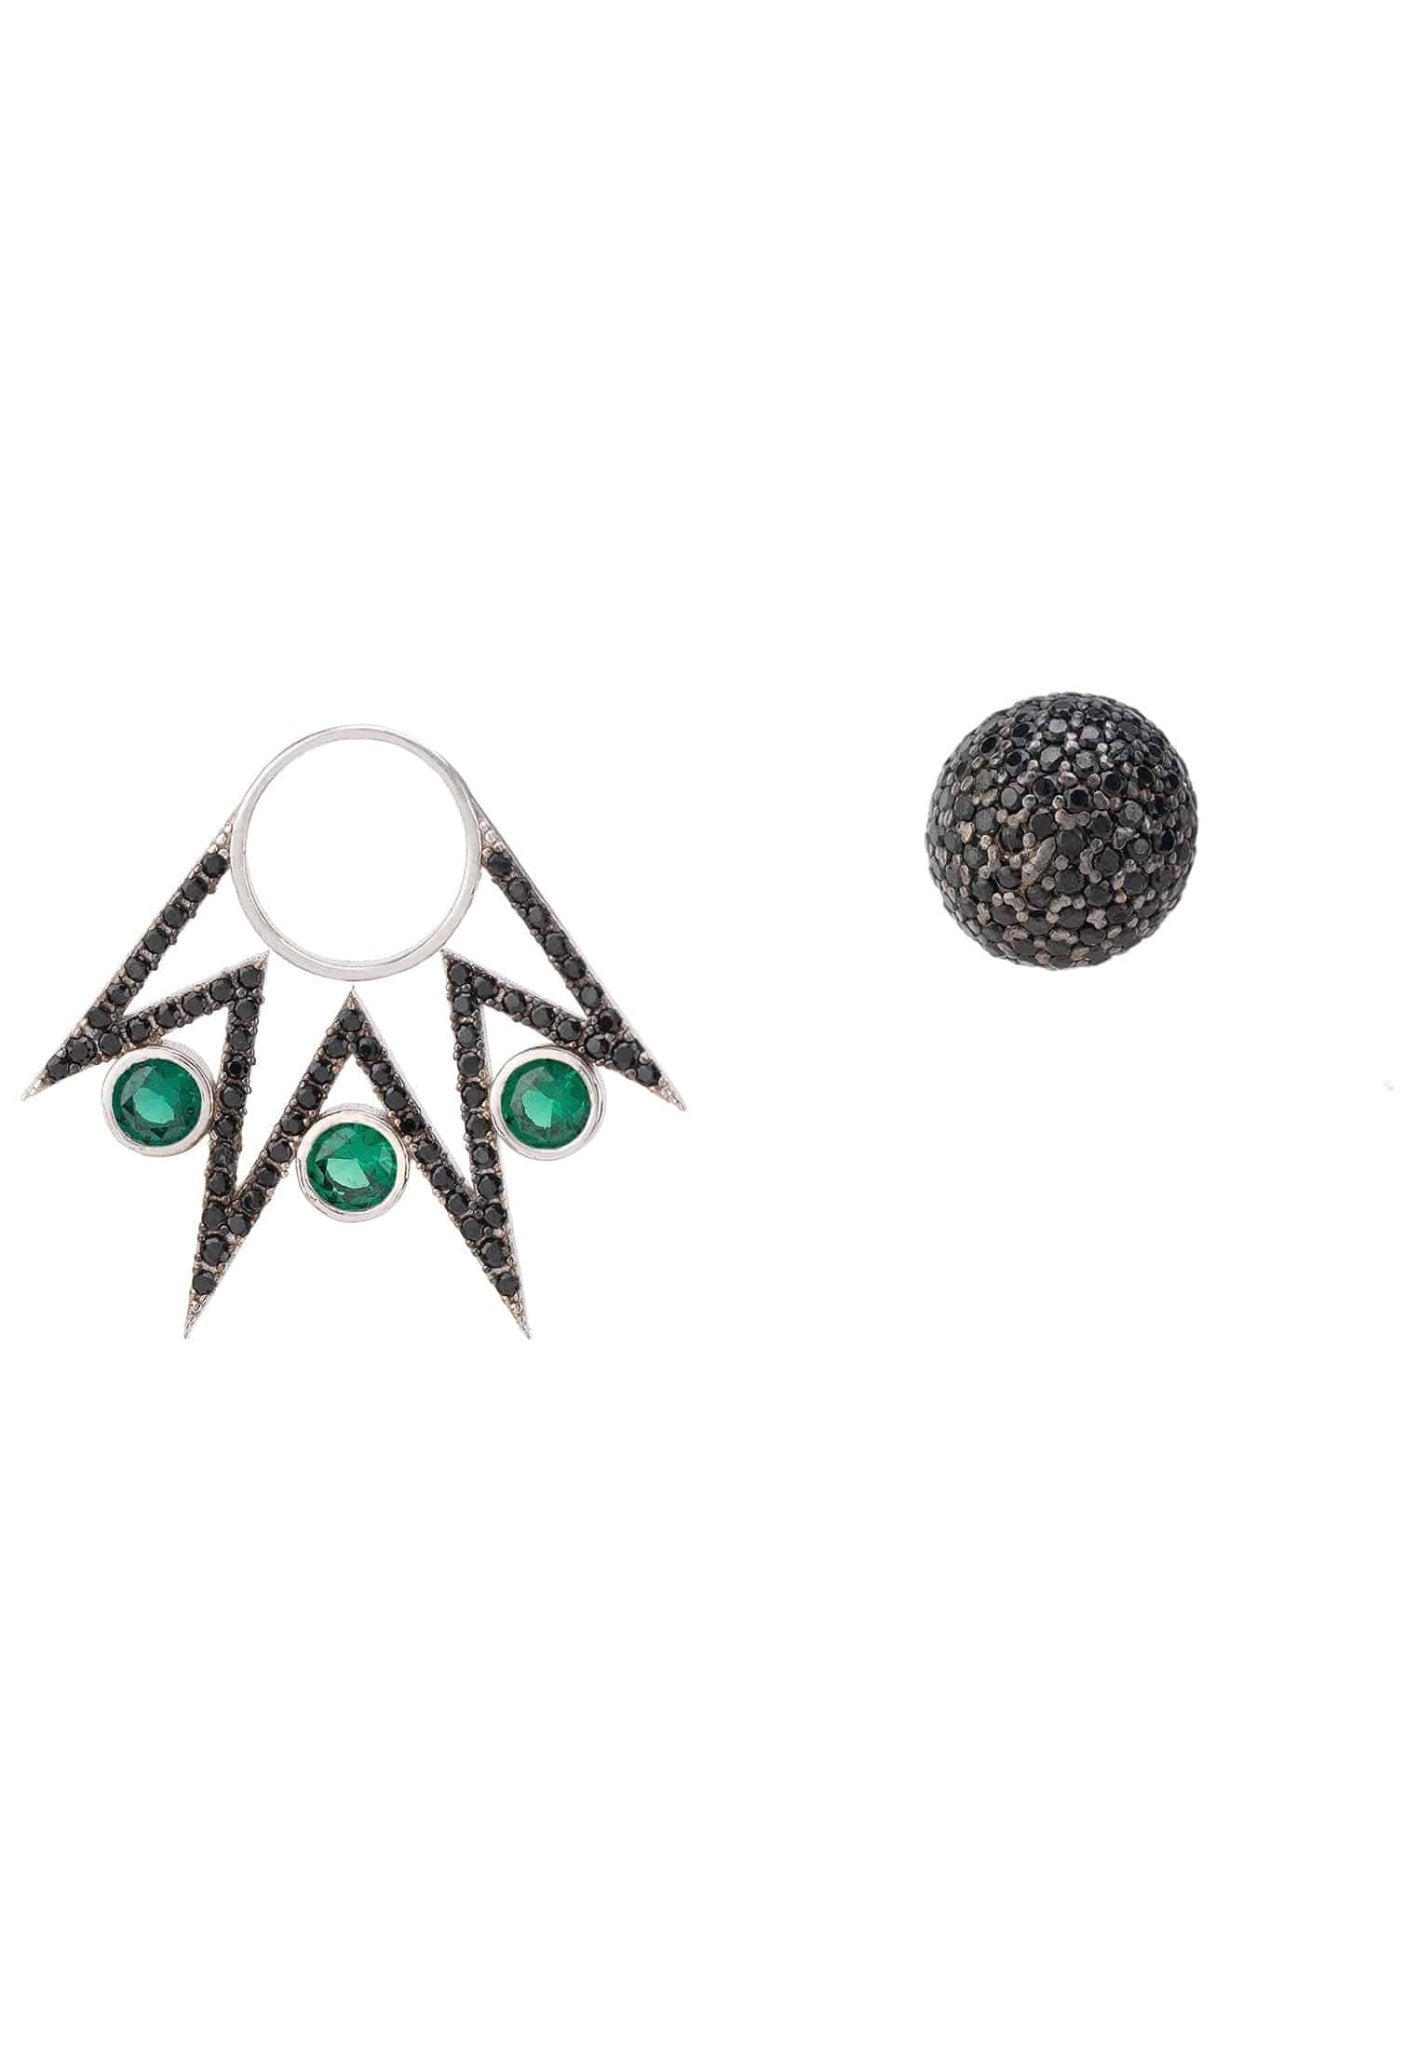 Jester Ear Jacket Convertible Earrings Green Black Silver - LATELITA Earrings